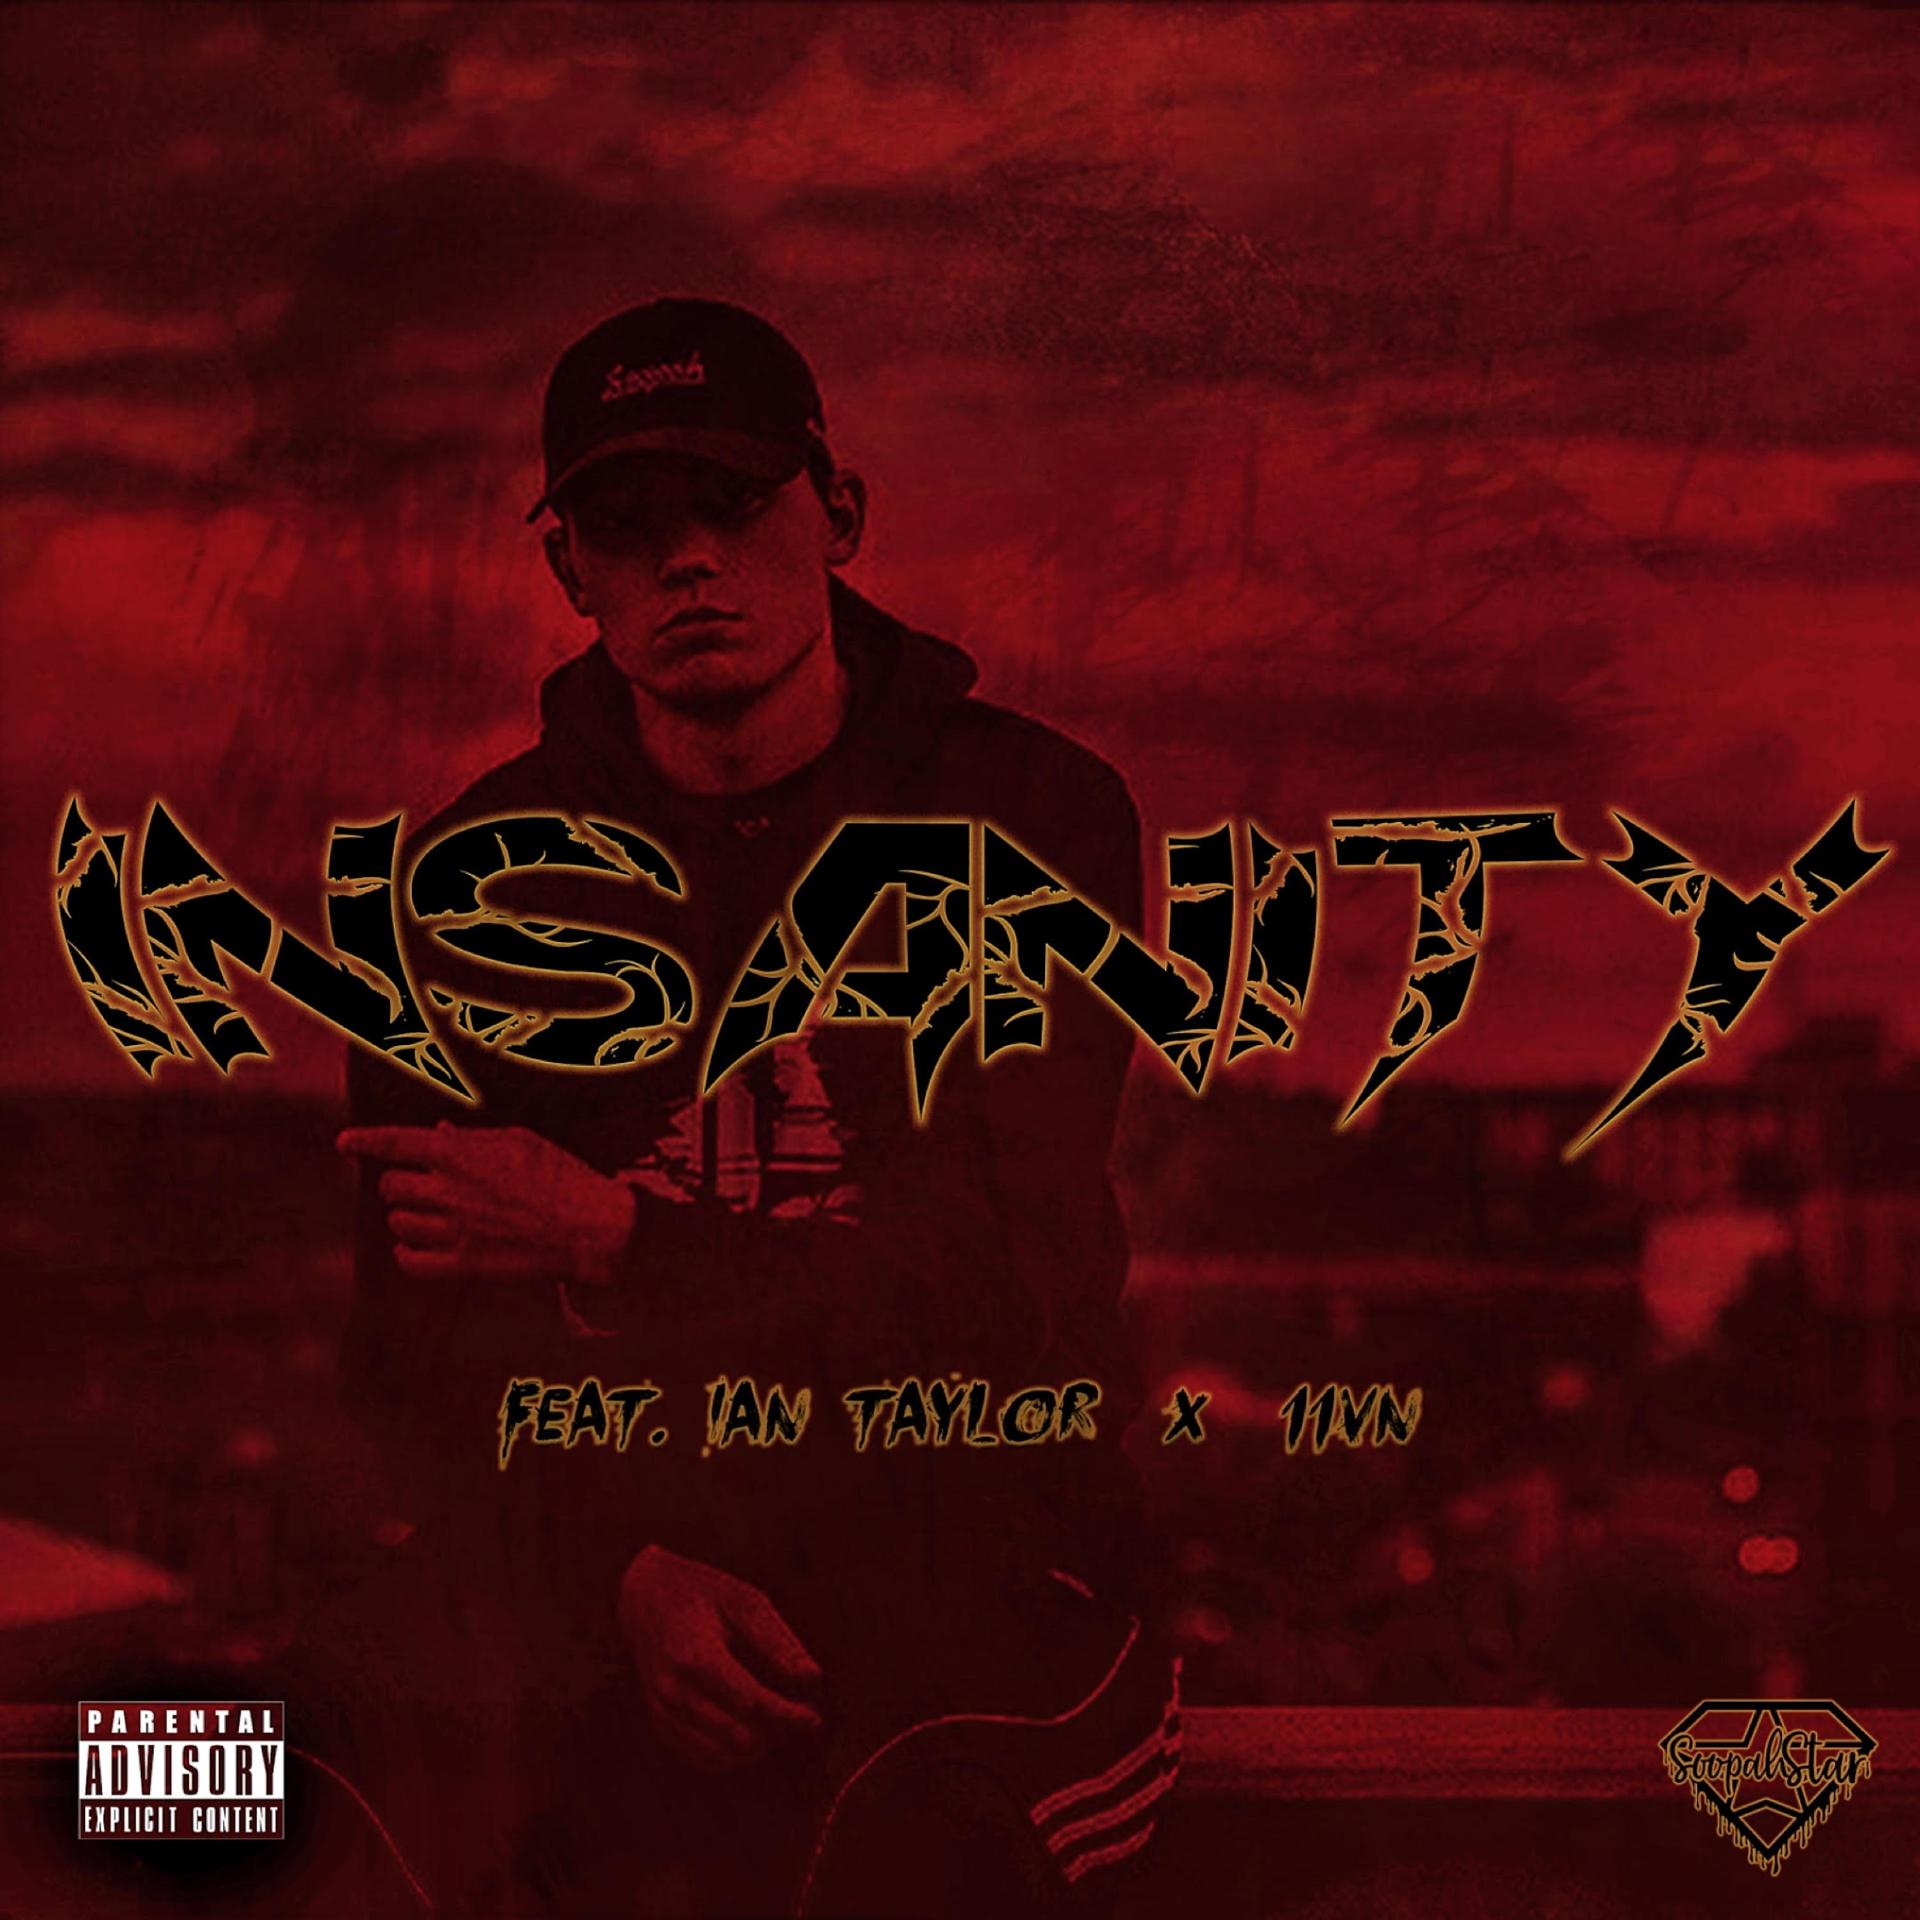 Постер альбома Insanity